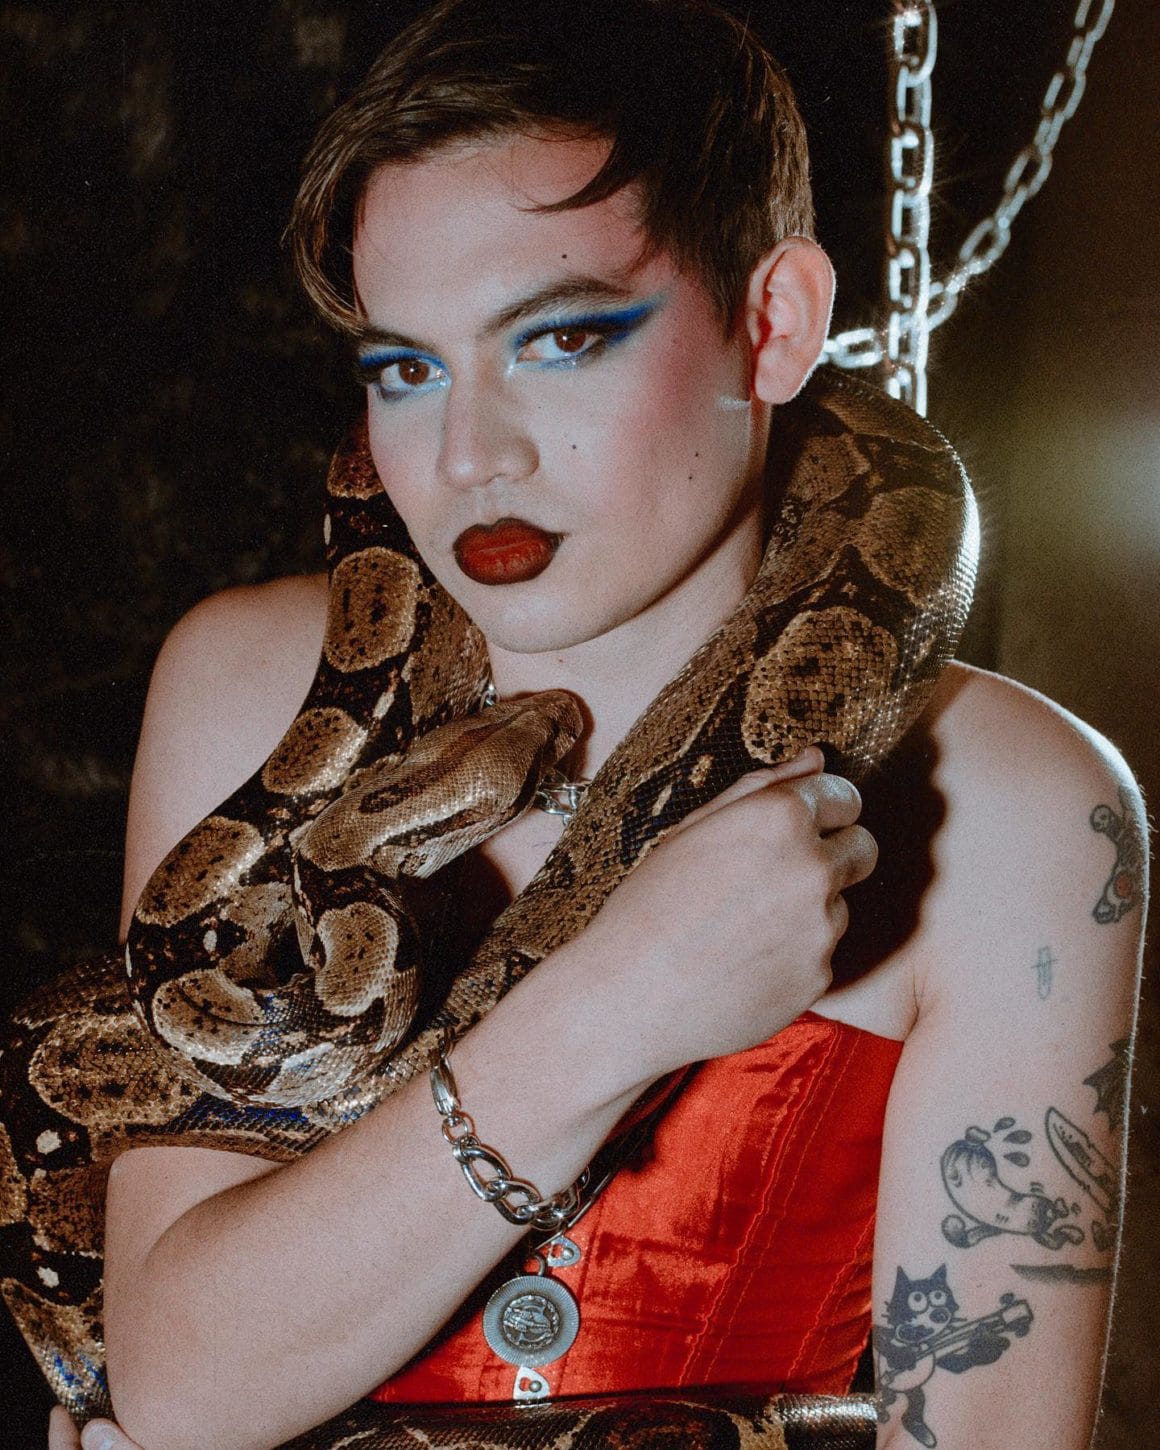 L'artiste Jimmy Knives pose maquillé et habillé d'un corset rouge avec un serpent autour du cou